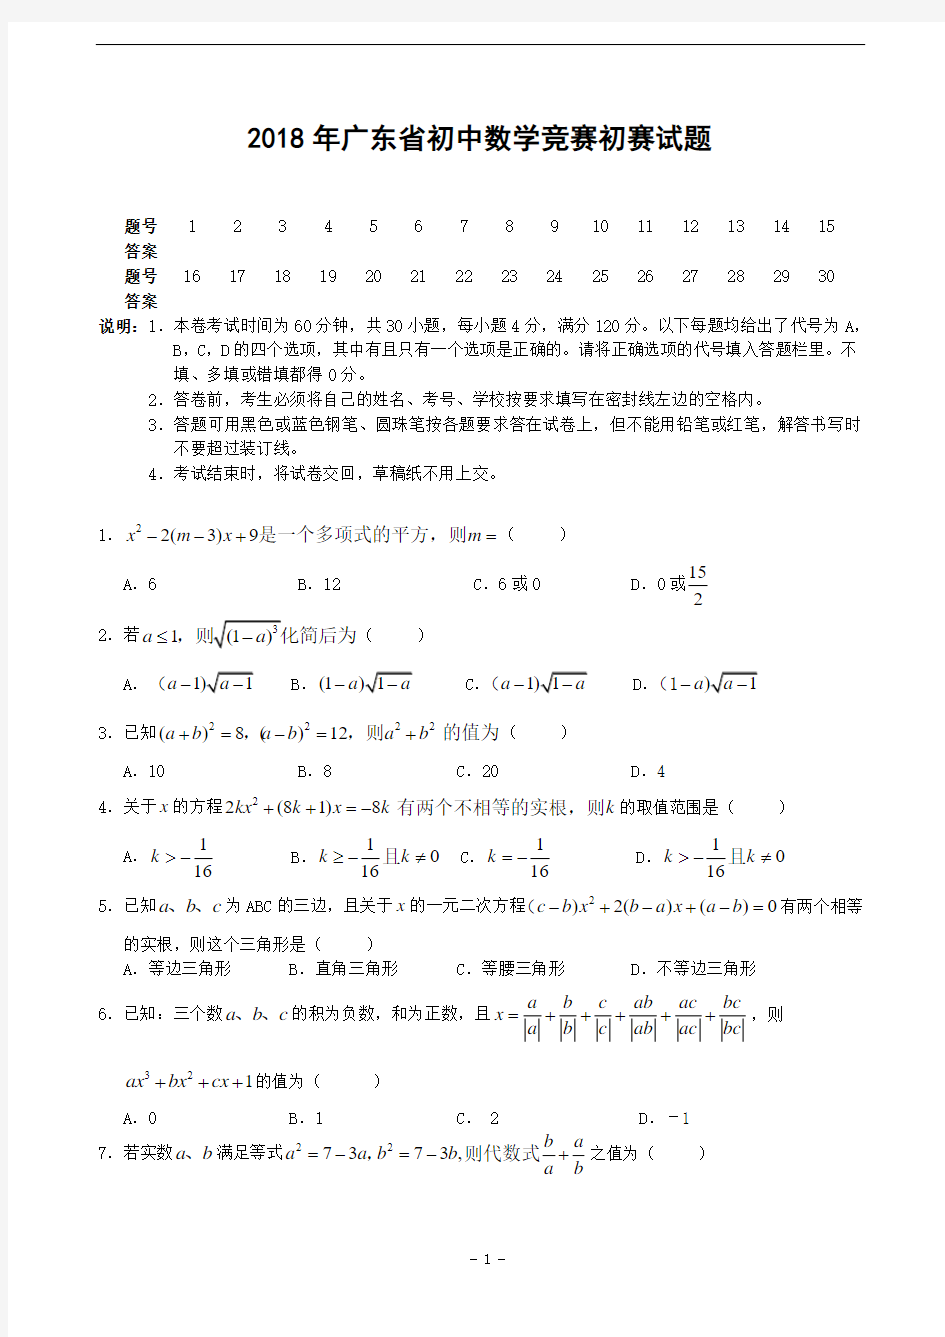 2018年广东省初中数学竞赛初赛试题(含答案)